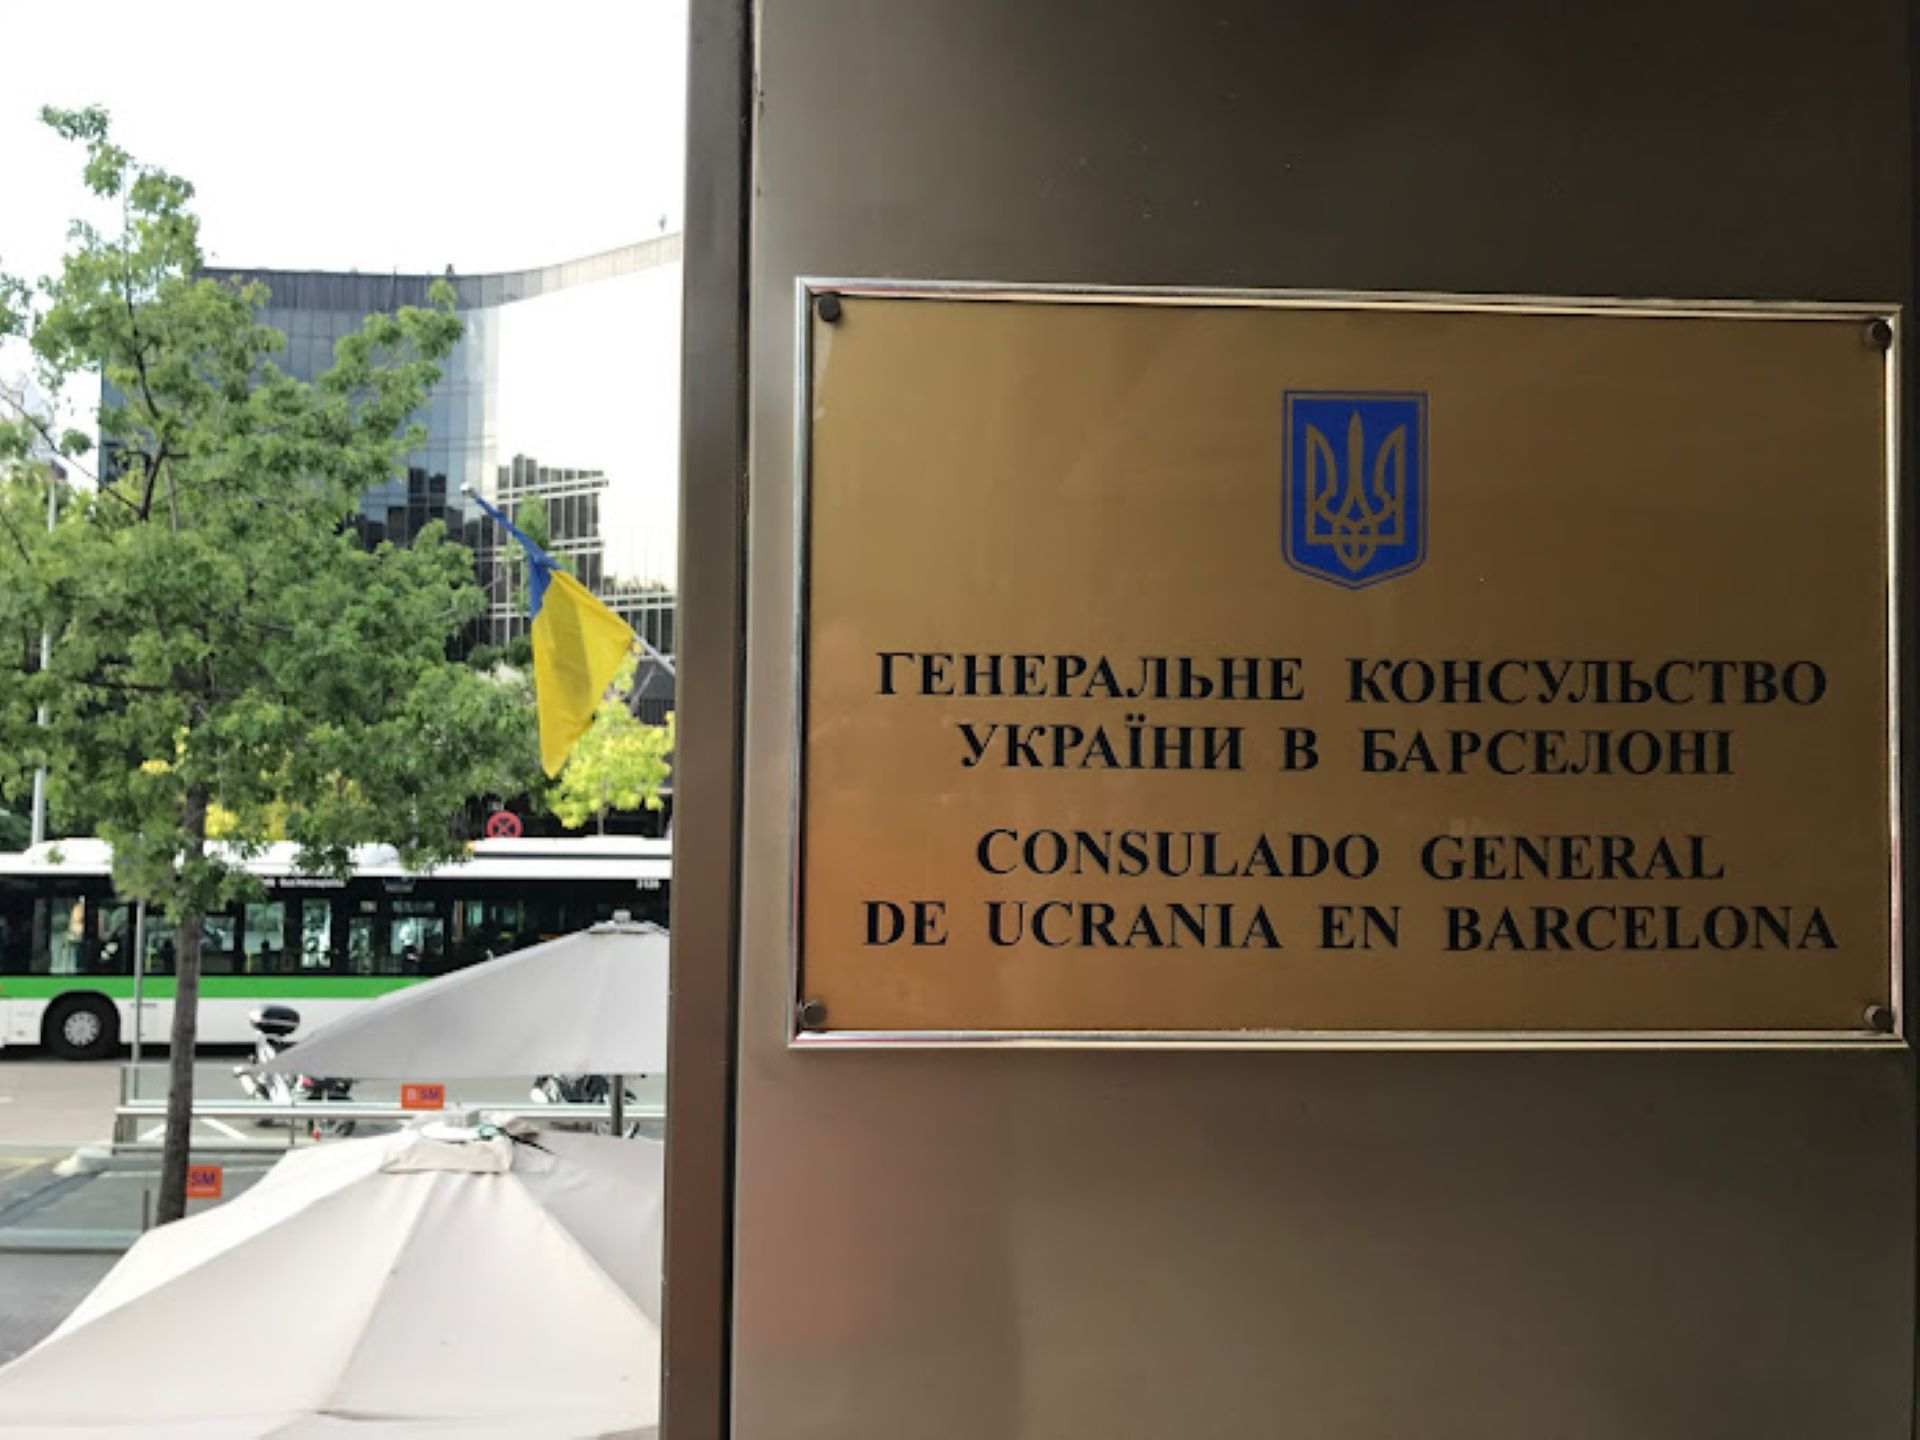 Una maleta abandonada en el consulado de Ucrania en Barcelona obliga a activar el protocolo antiterrorista